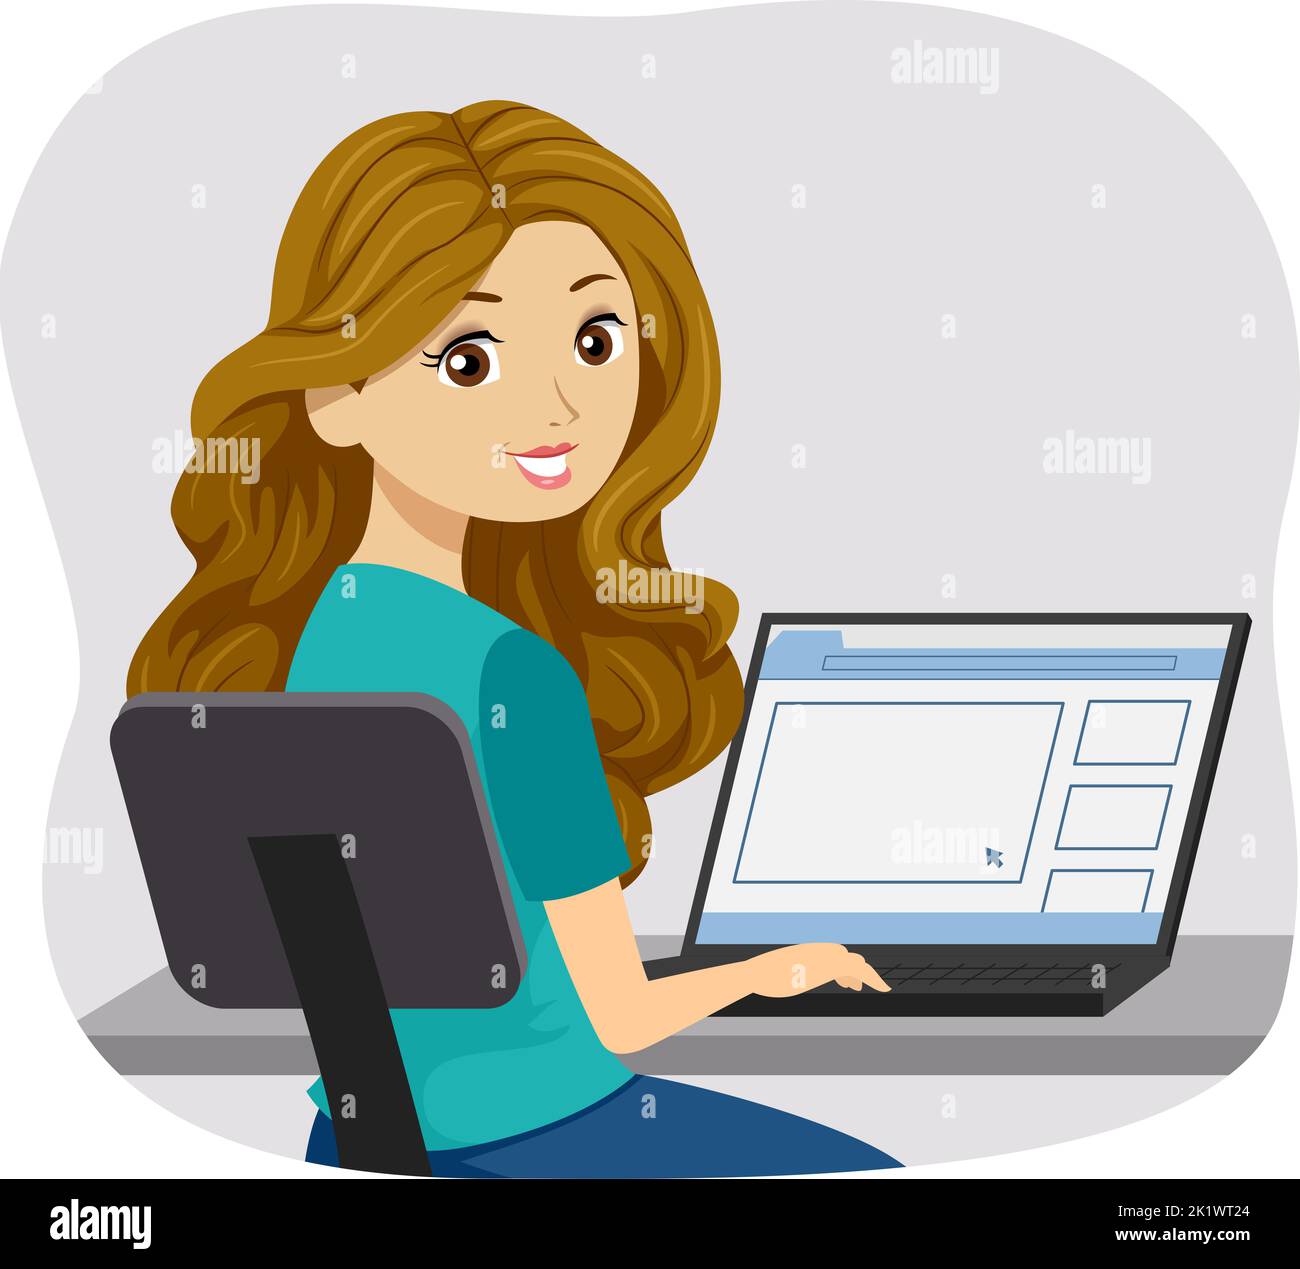 Illustrazione di una ragazza teenager seduta sulla sedia girevole e che guarda i video online sul suo laptop Foto Stock